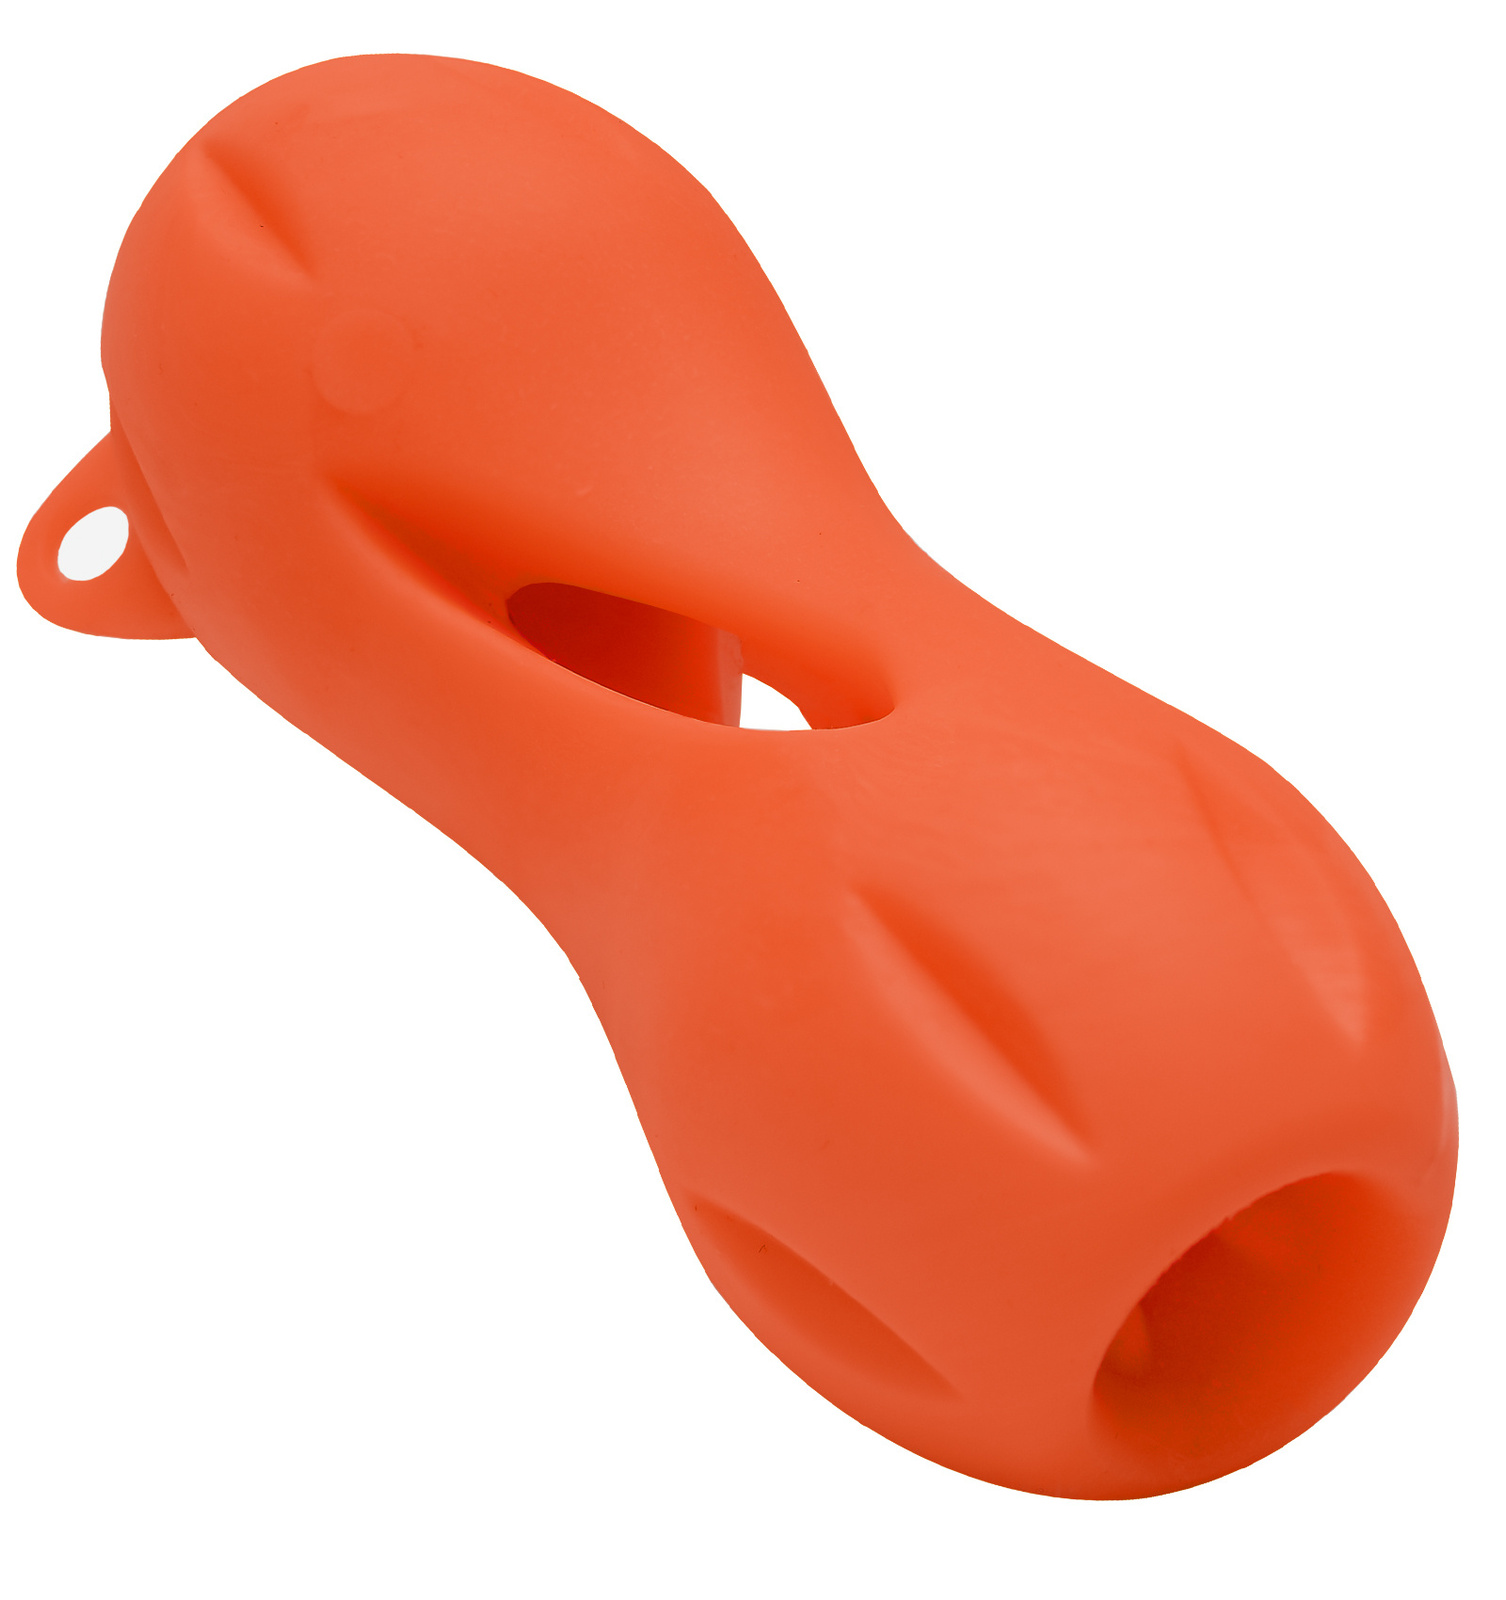 цена PETSHOP игрушки PETSHOP игрушки игрушка для собак Кость резиновая для лакомств, оранжевая (13х5,5 см)